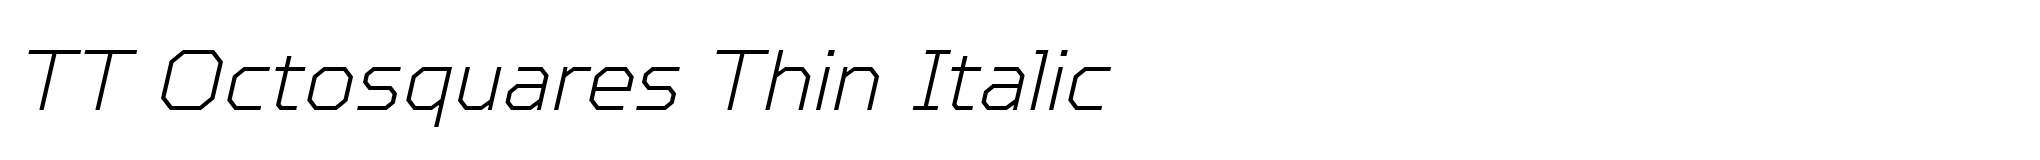 TT Octosquares Thin Italic image